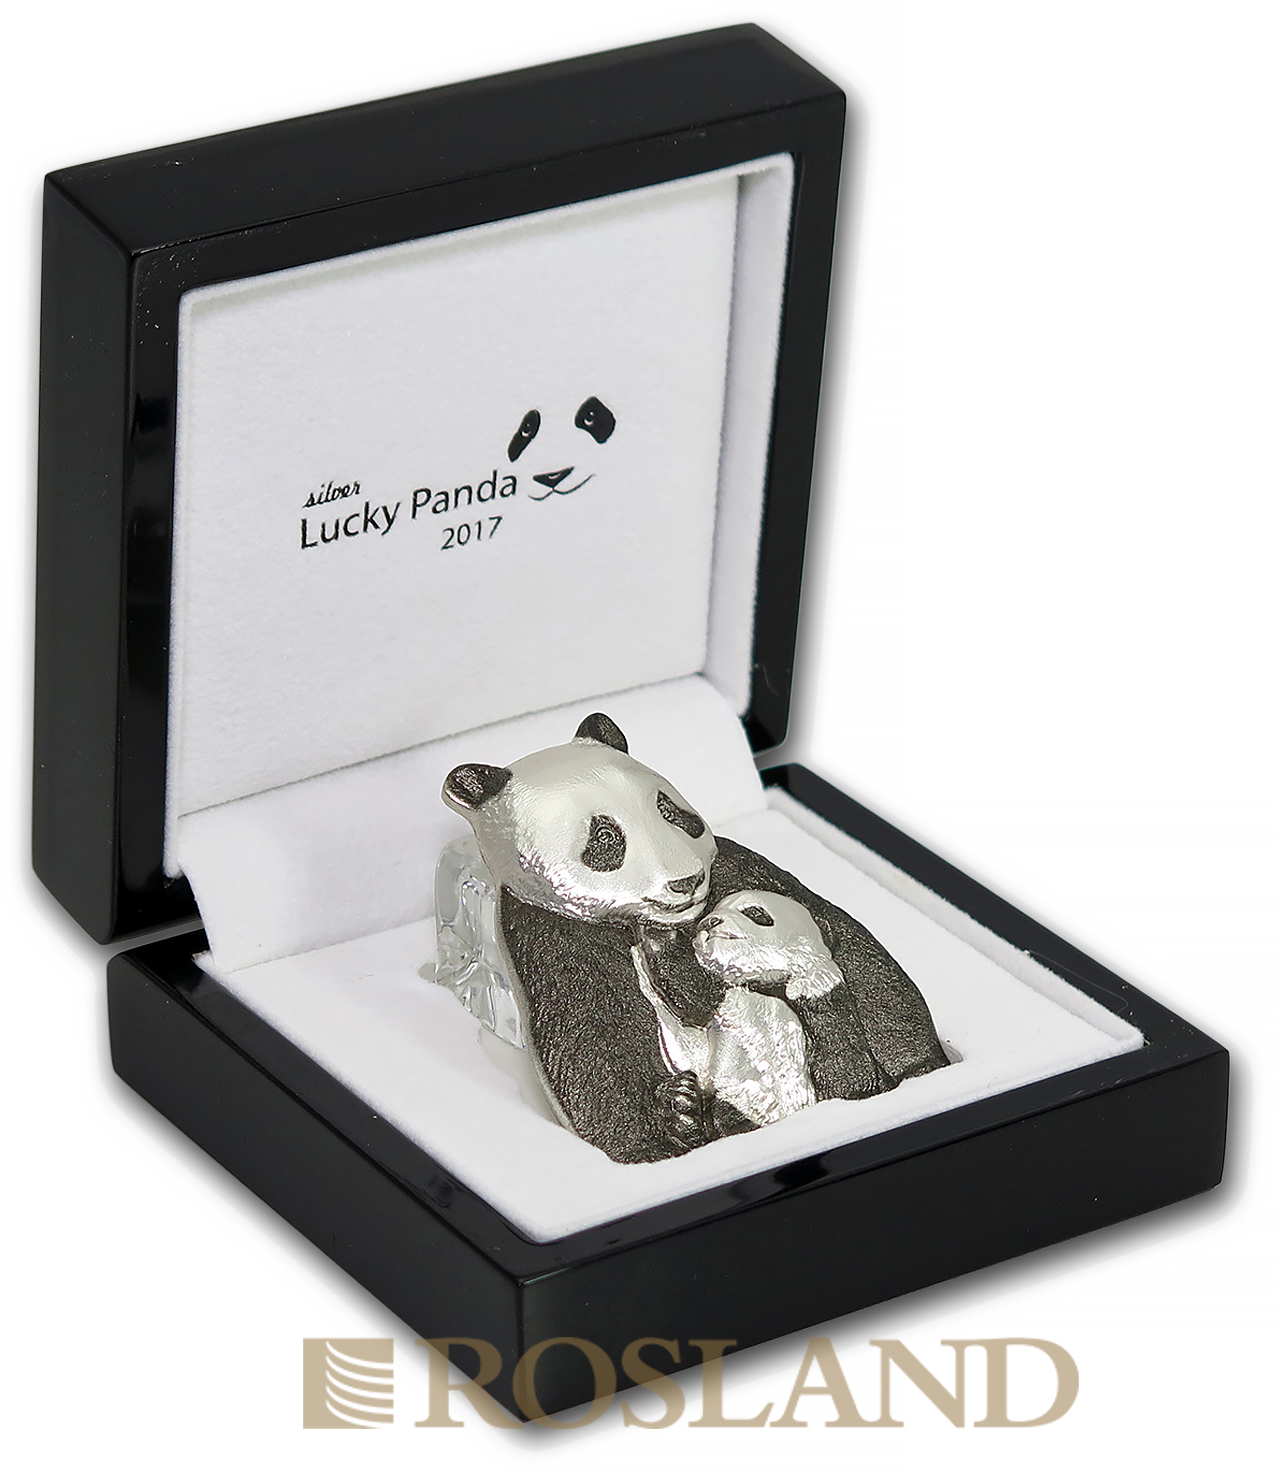 88 Gramm Silbermünze Cook Islands Lucky Panda 2017 (Box, Zertifikat)